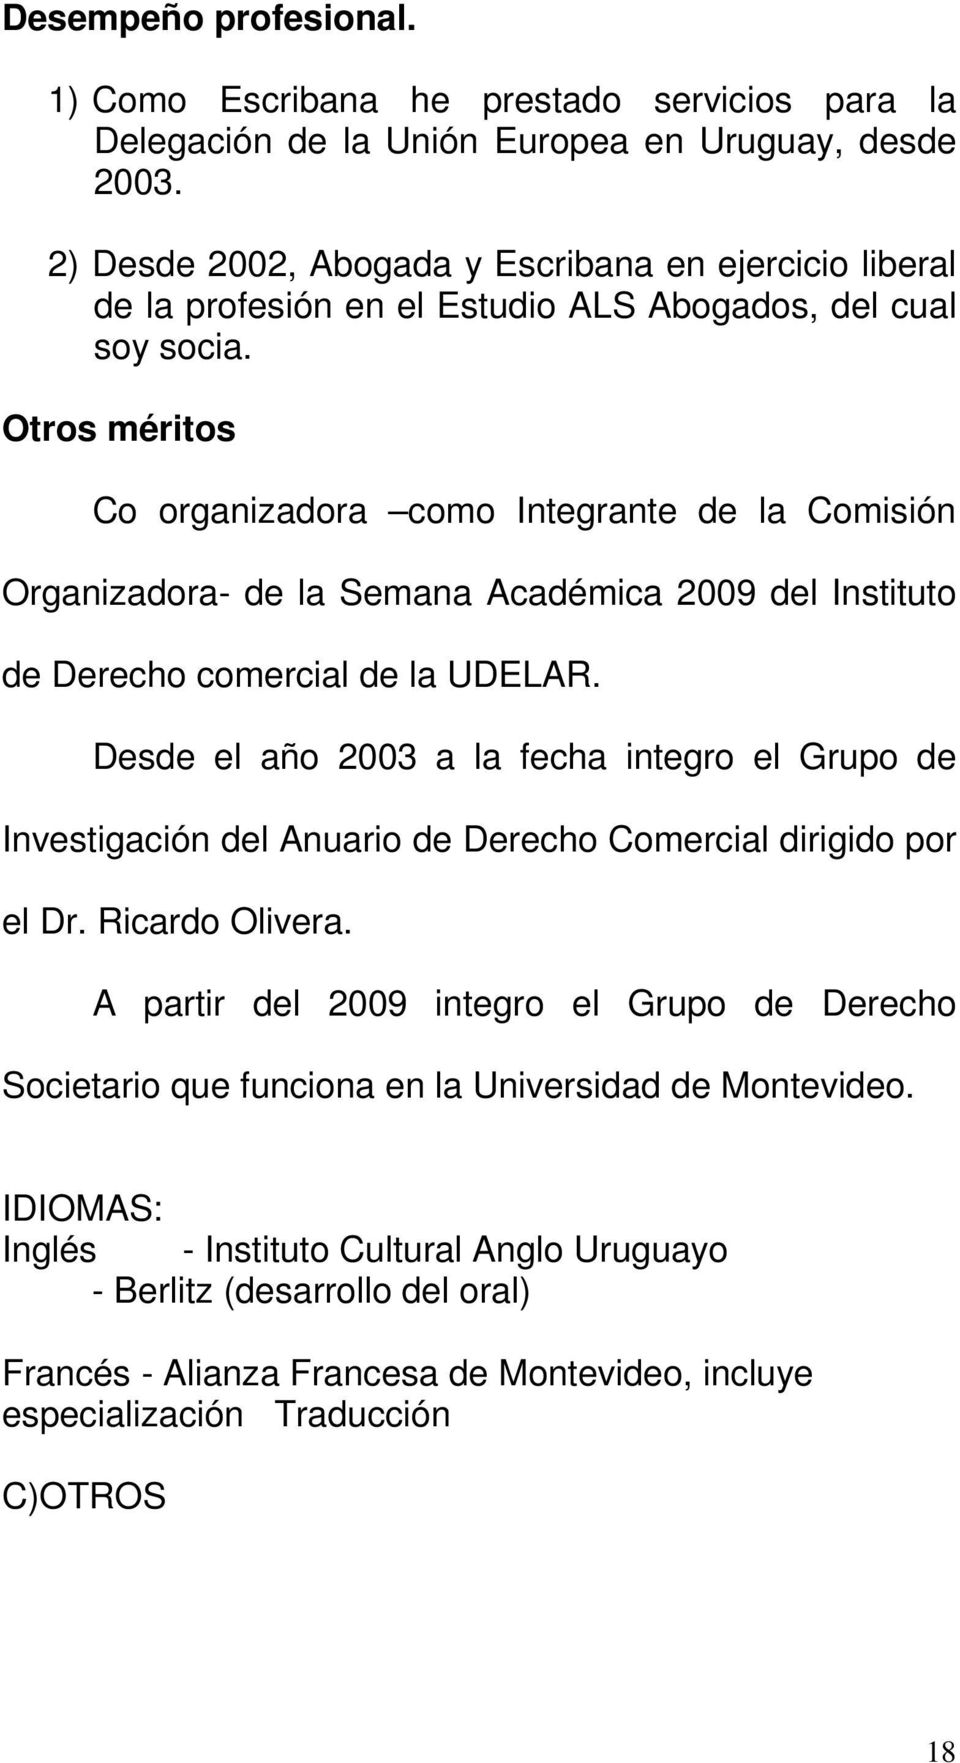 Otros méritos Co organizadora como Integrante de la Comisión Organizadora- de la Semana Académica 2009 del Instituto de Derecho comercial de la UDELAR.